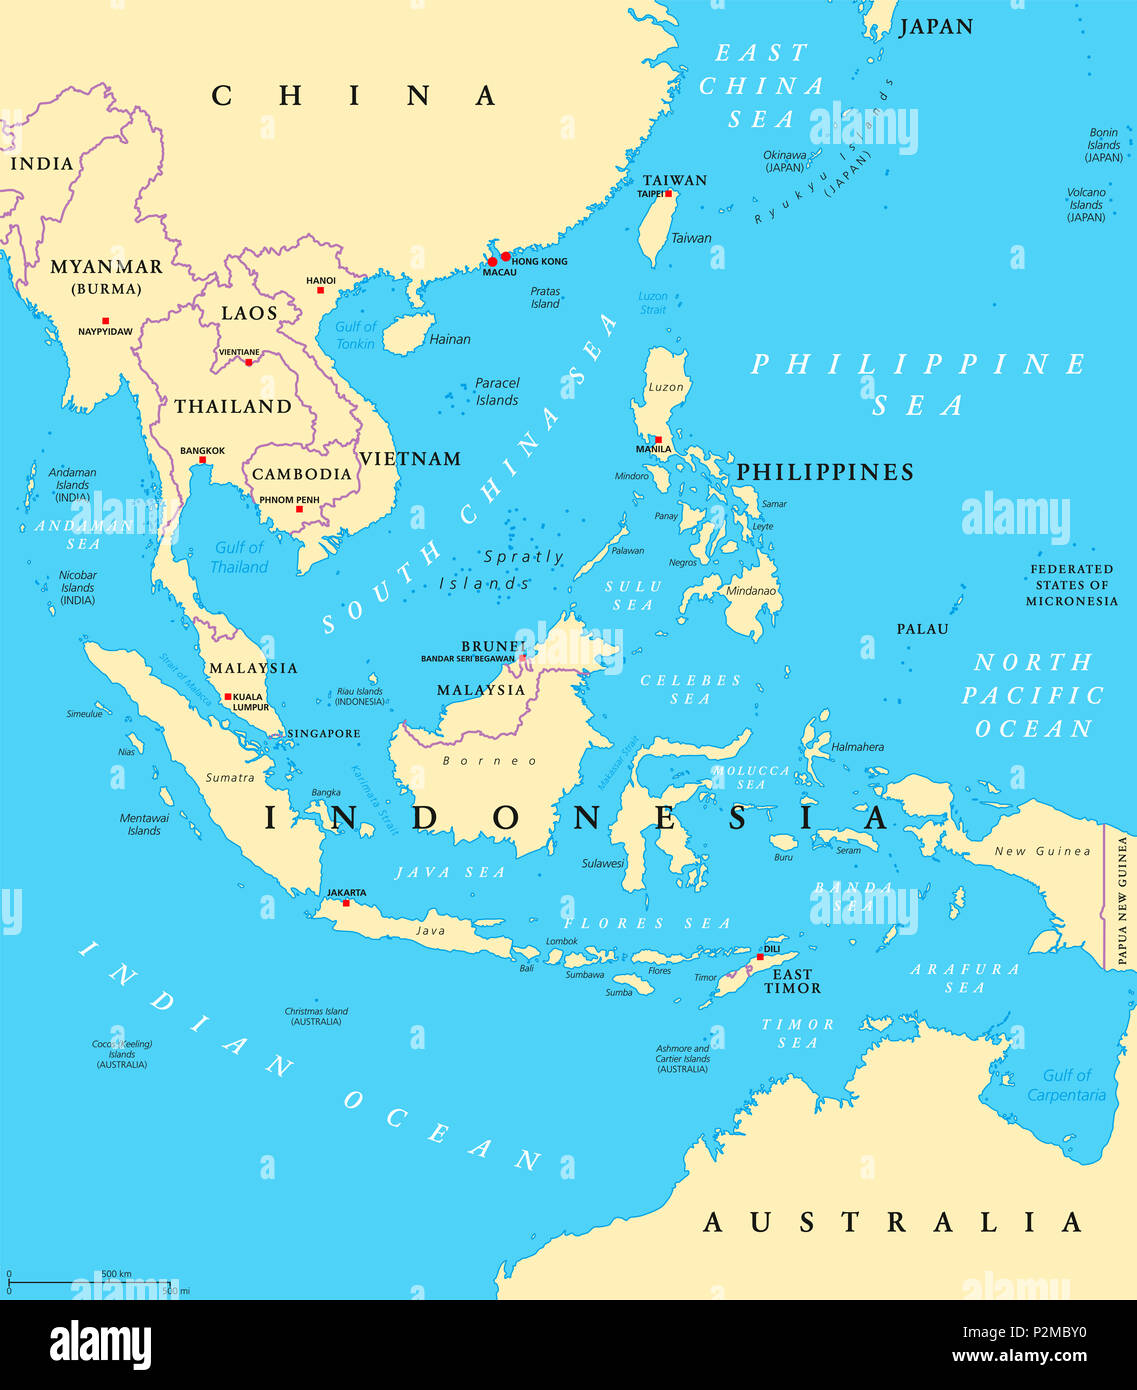 Asie du sud-est, une carte politique avec les capitales et les frontières. Sous-région de l'Asie. L'étiquetage en anglais. L'illustration. Banque D'Images